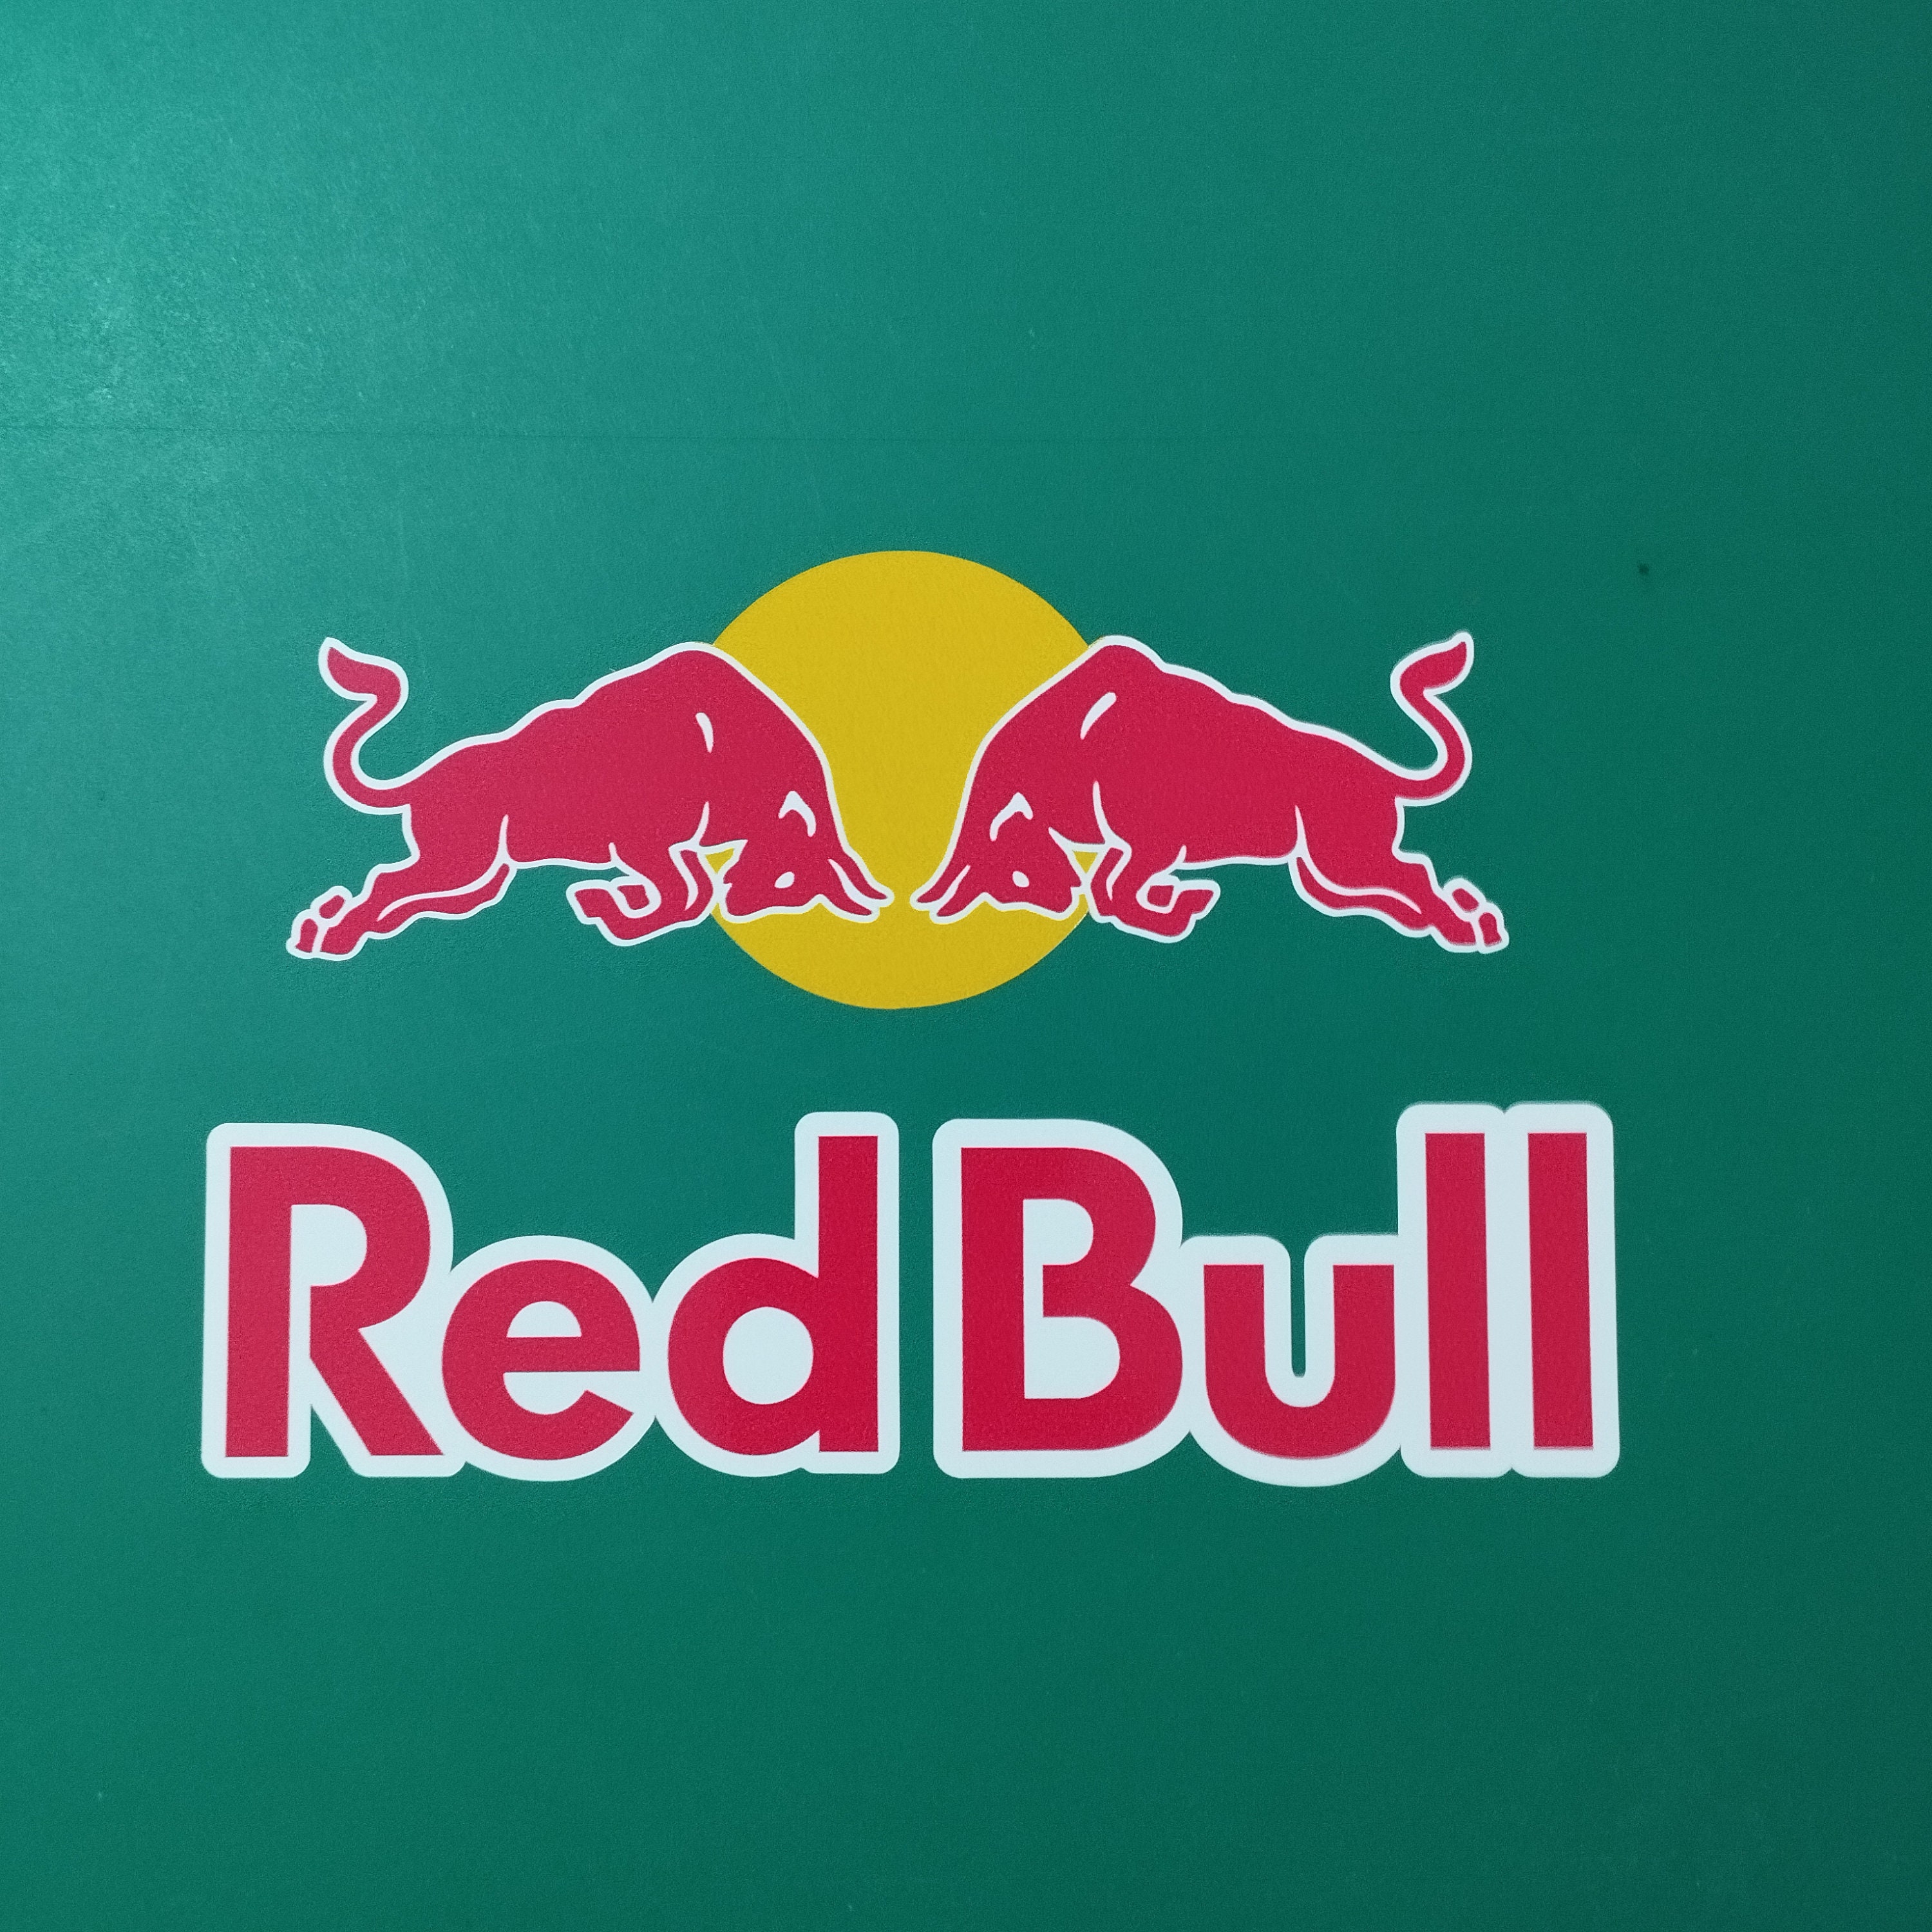 Red bull led sign - .de